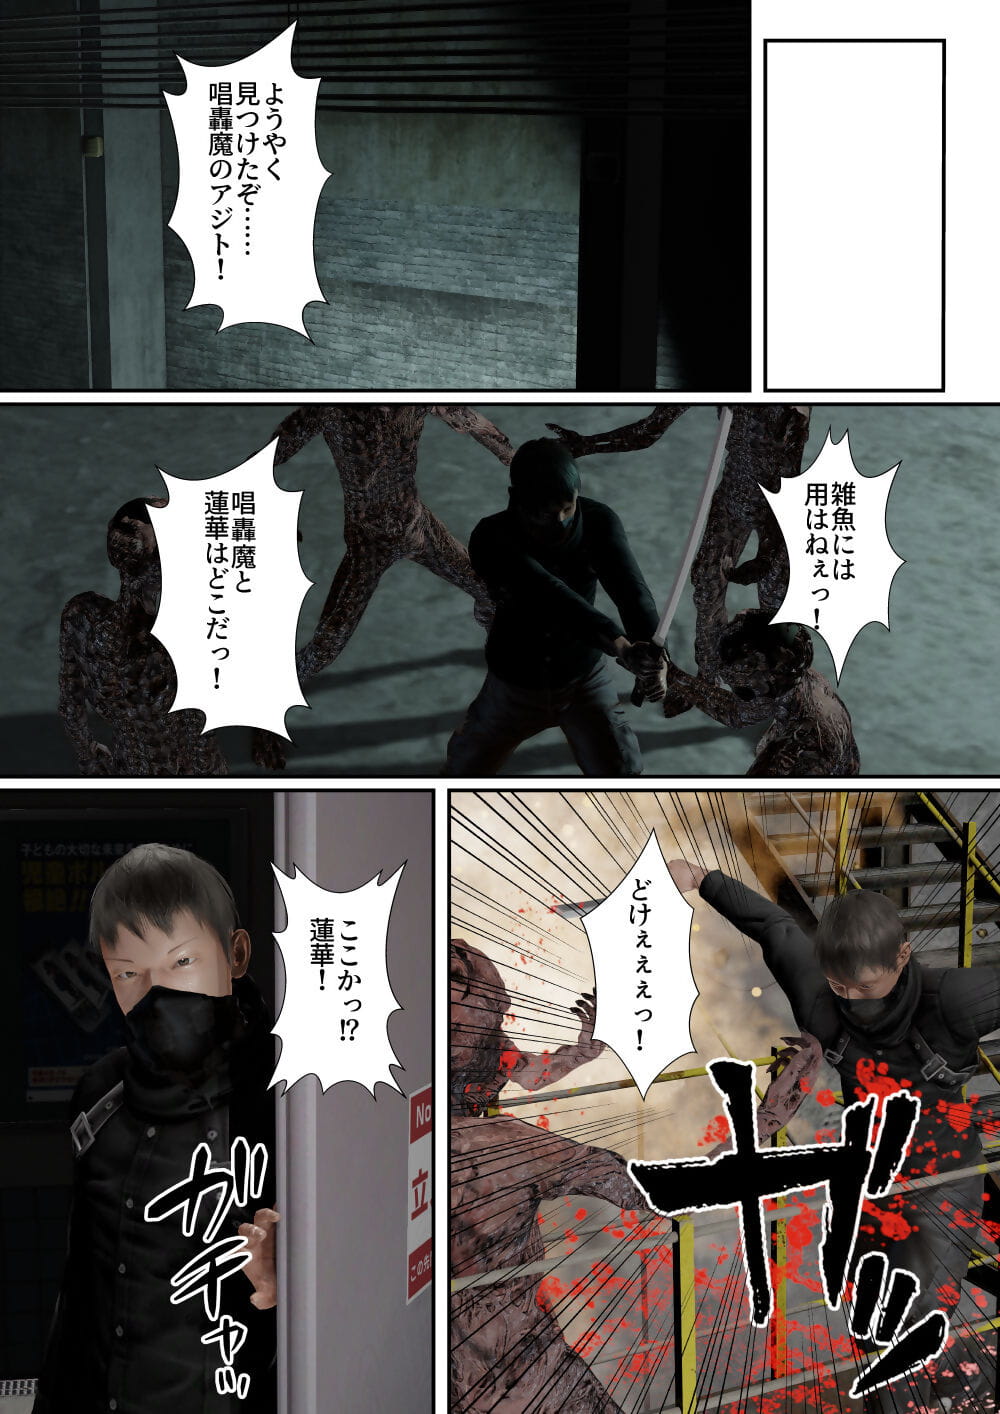 Goriramu Touma kenshi shiriizu Demon Swordsman Series - part 2 page 1